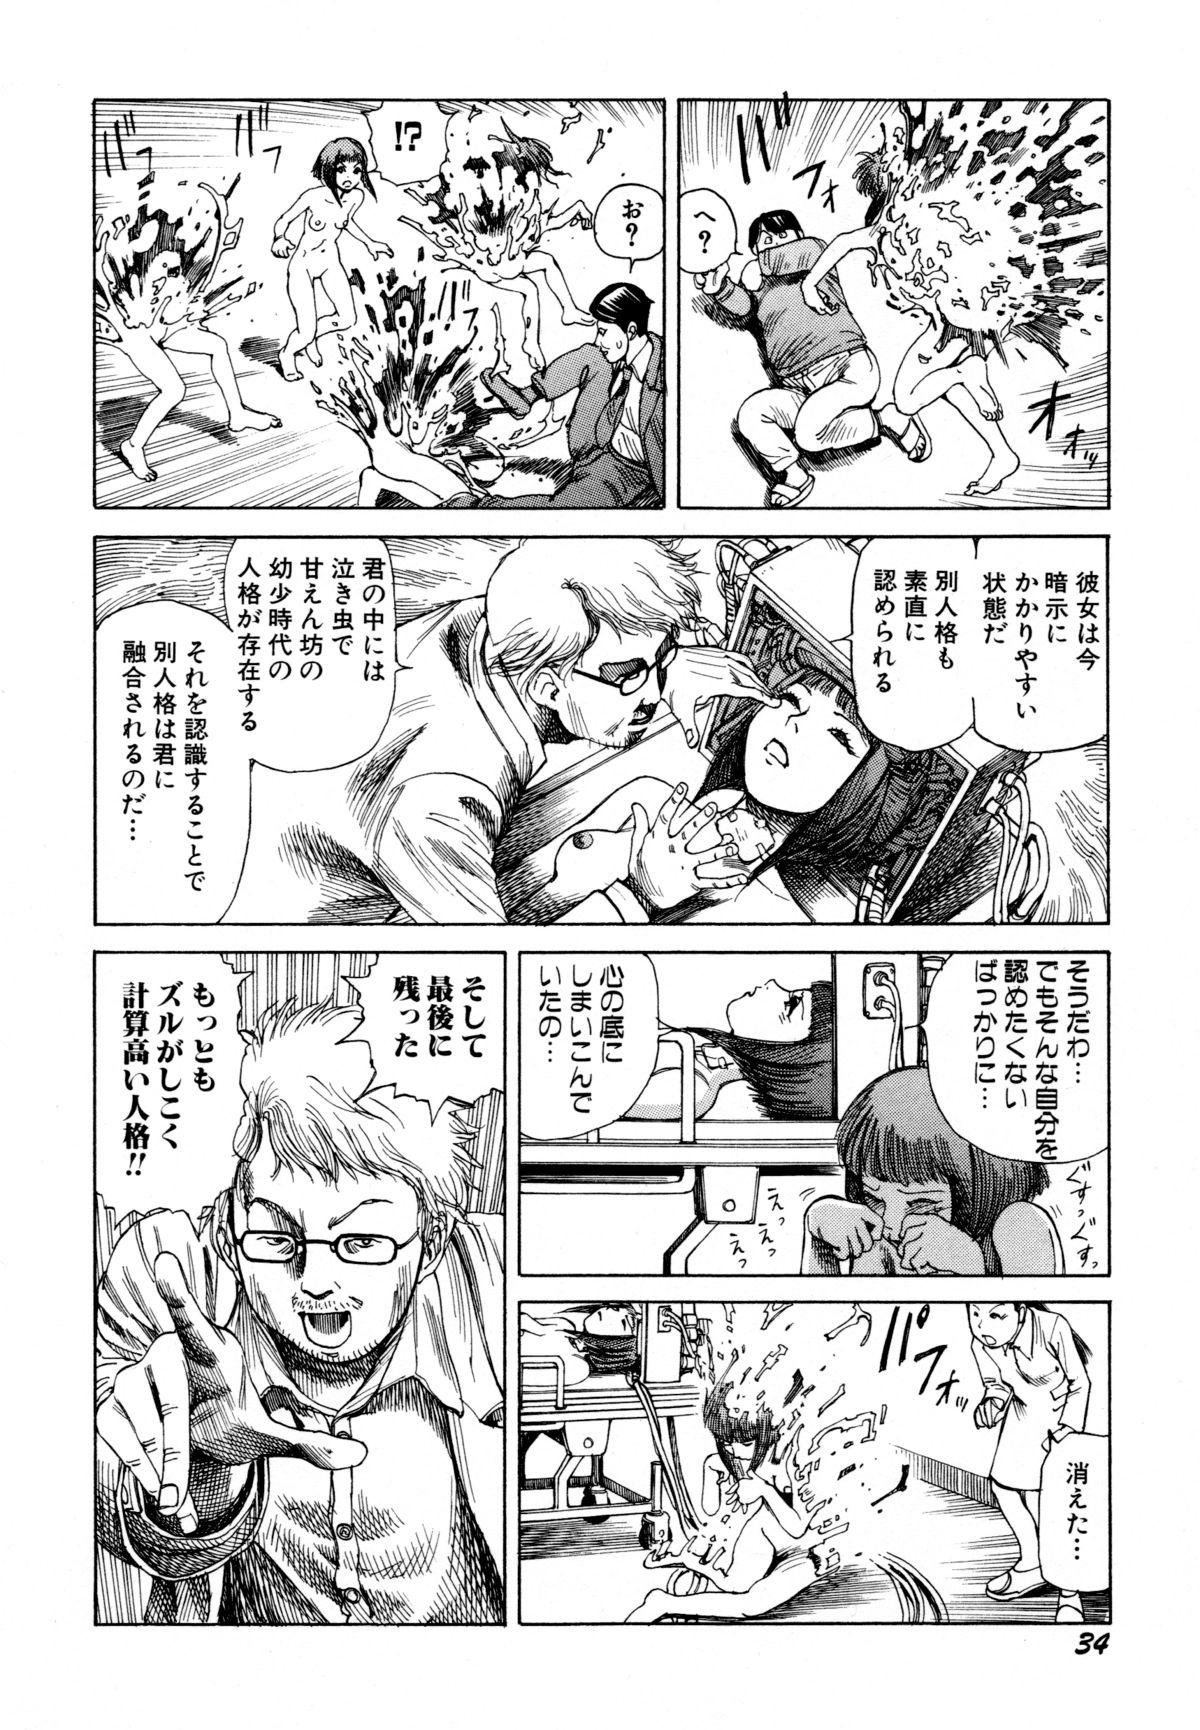 Arijigoku vs Barabara Shoujo - Antlion vs BaraBara Girl 35